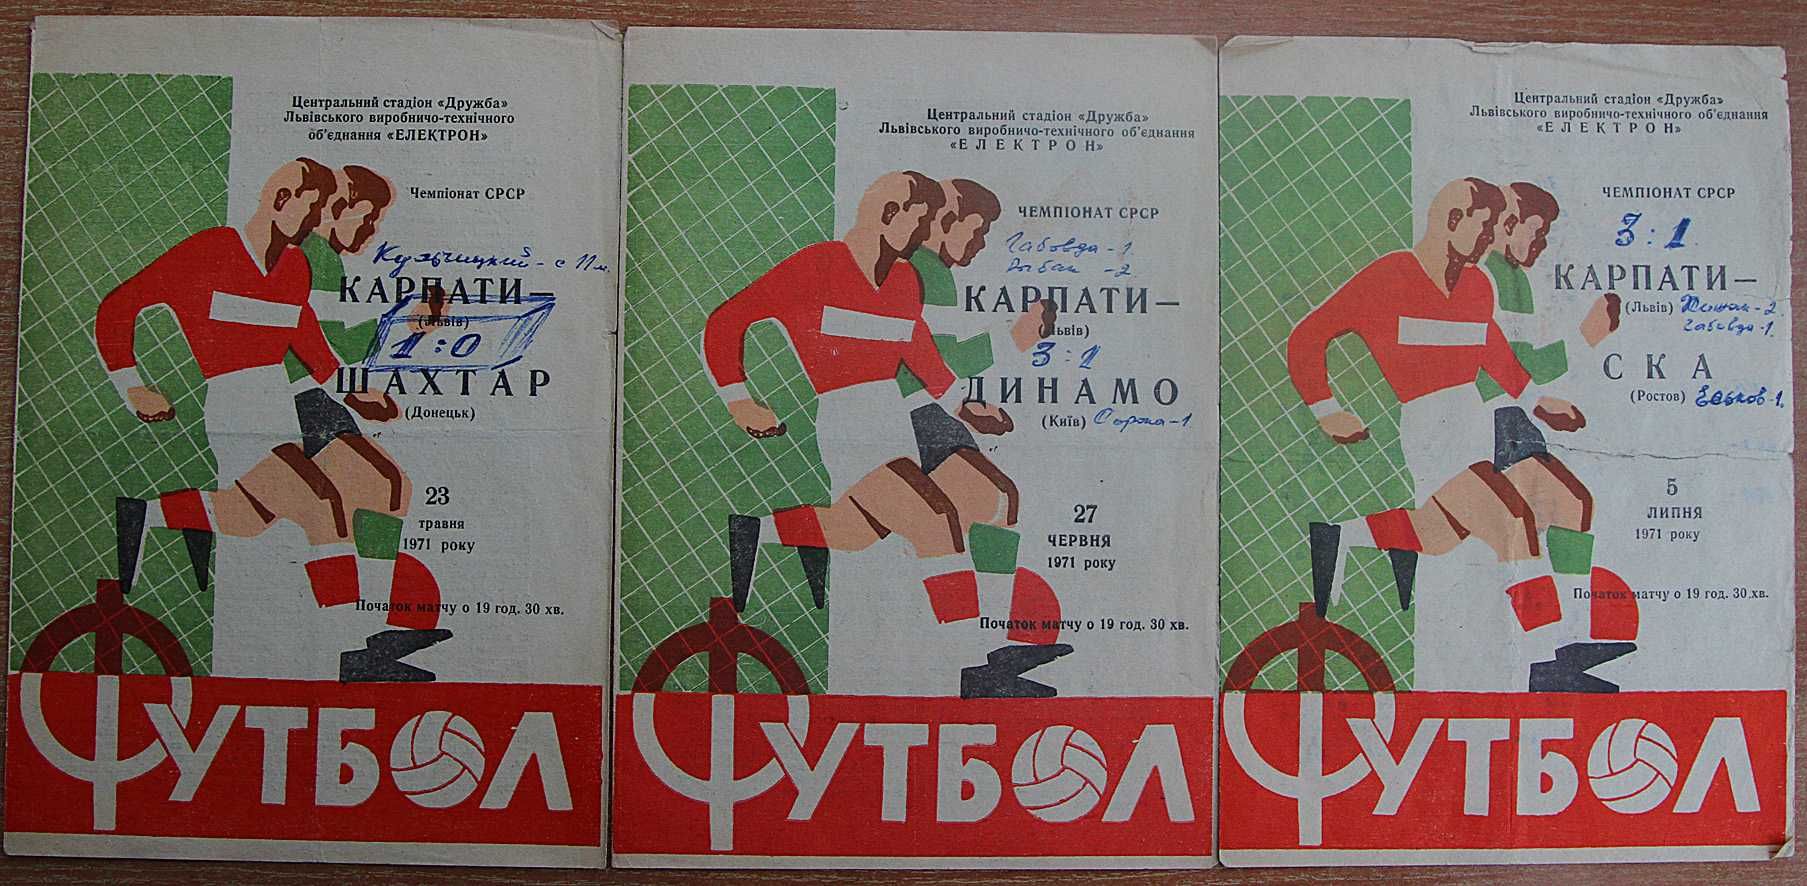 Футбольні програмки Карпати-Шахтар,Динамо(Київ),СКА(Ростов) 1971 рік.